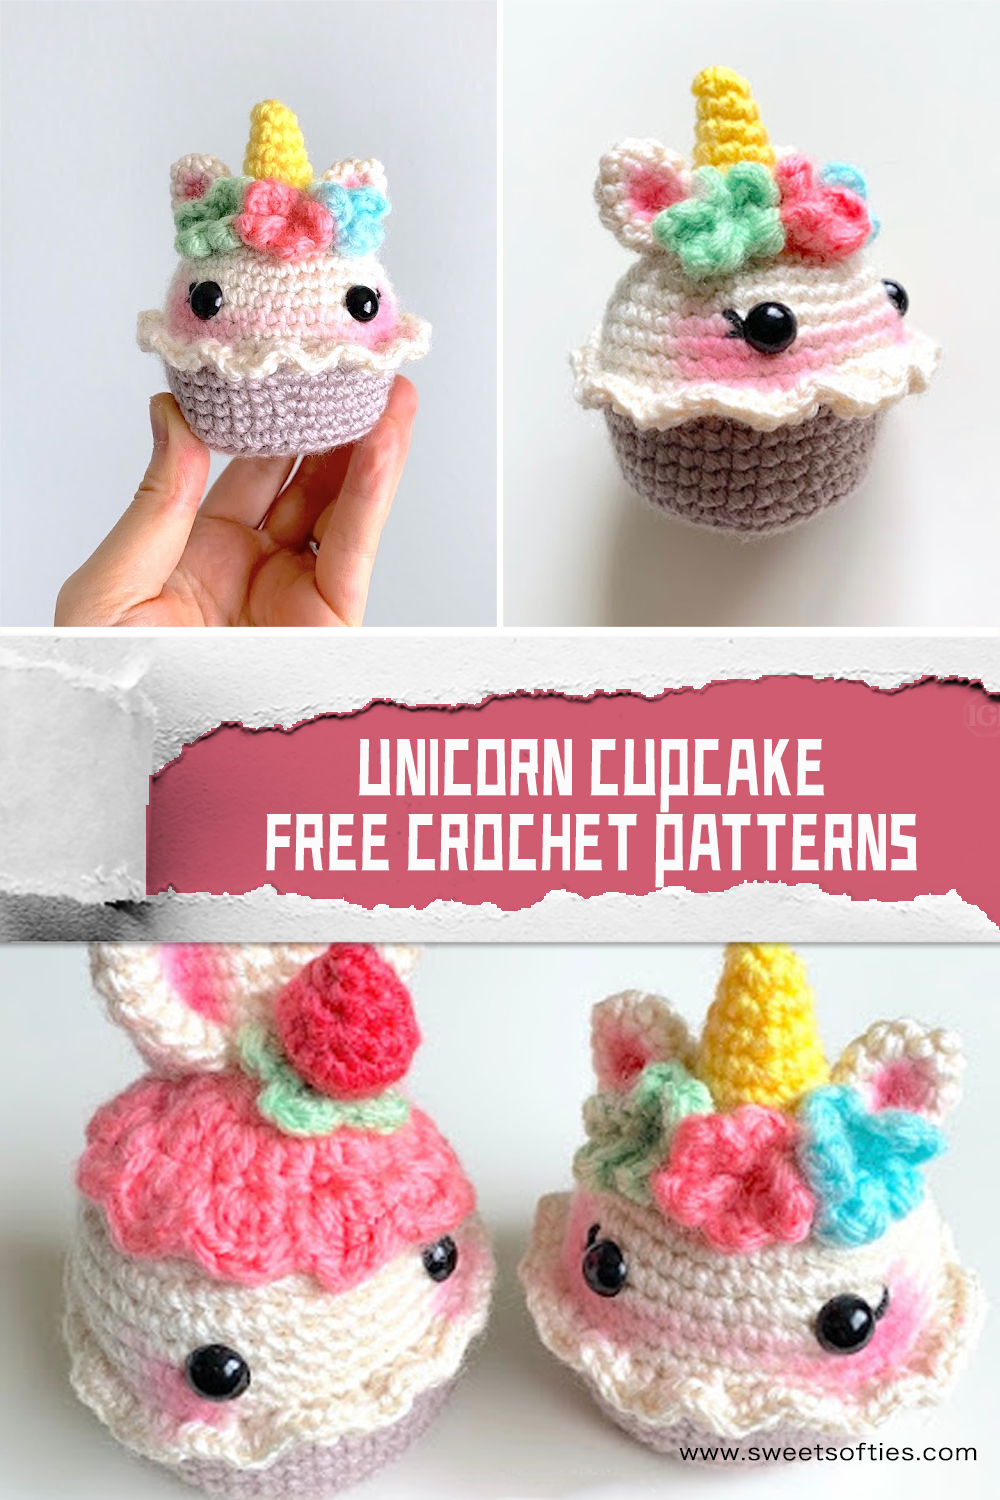 FREE Unicorn Cupcake Crochet Patterns 